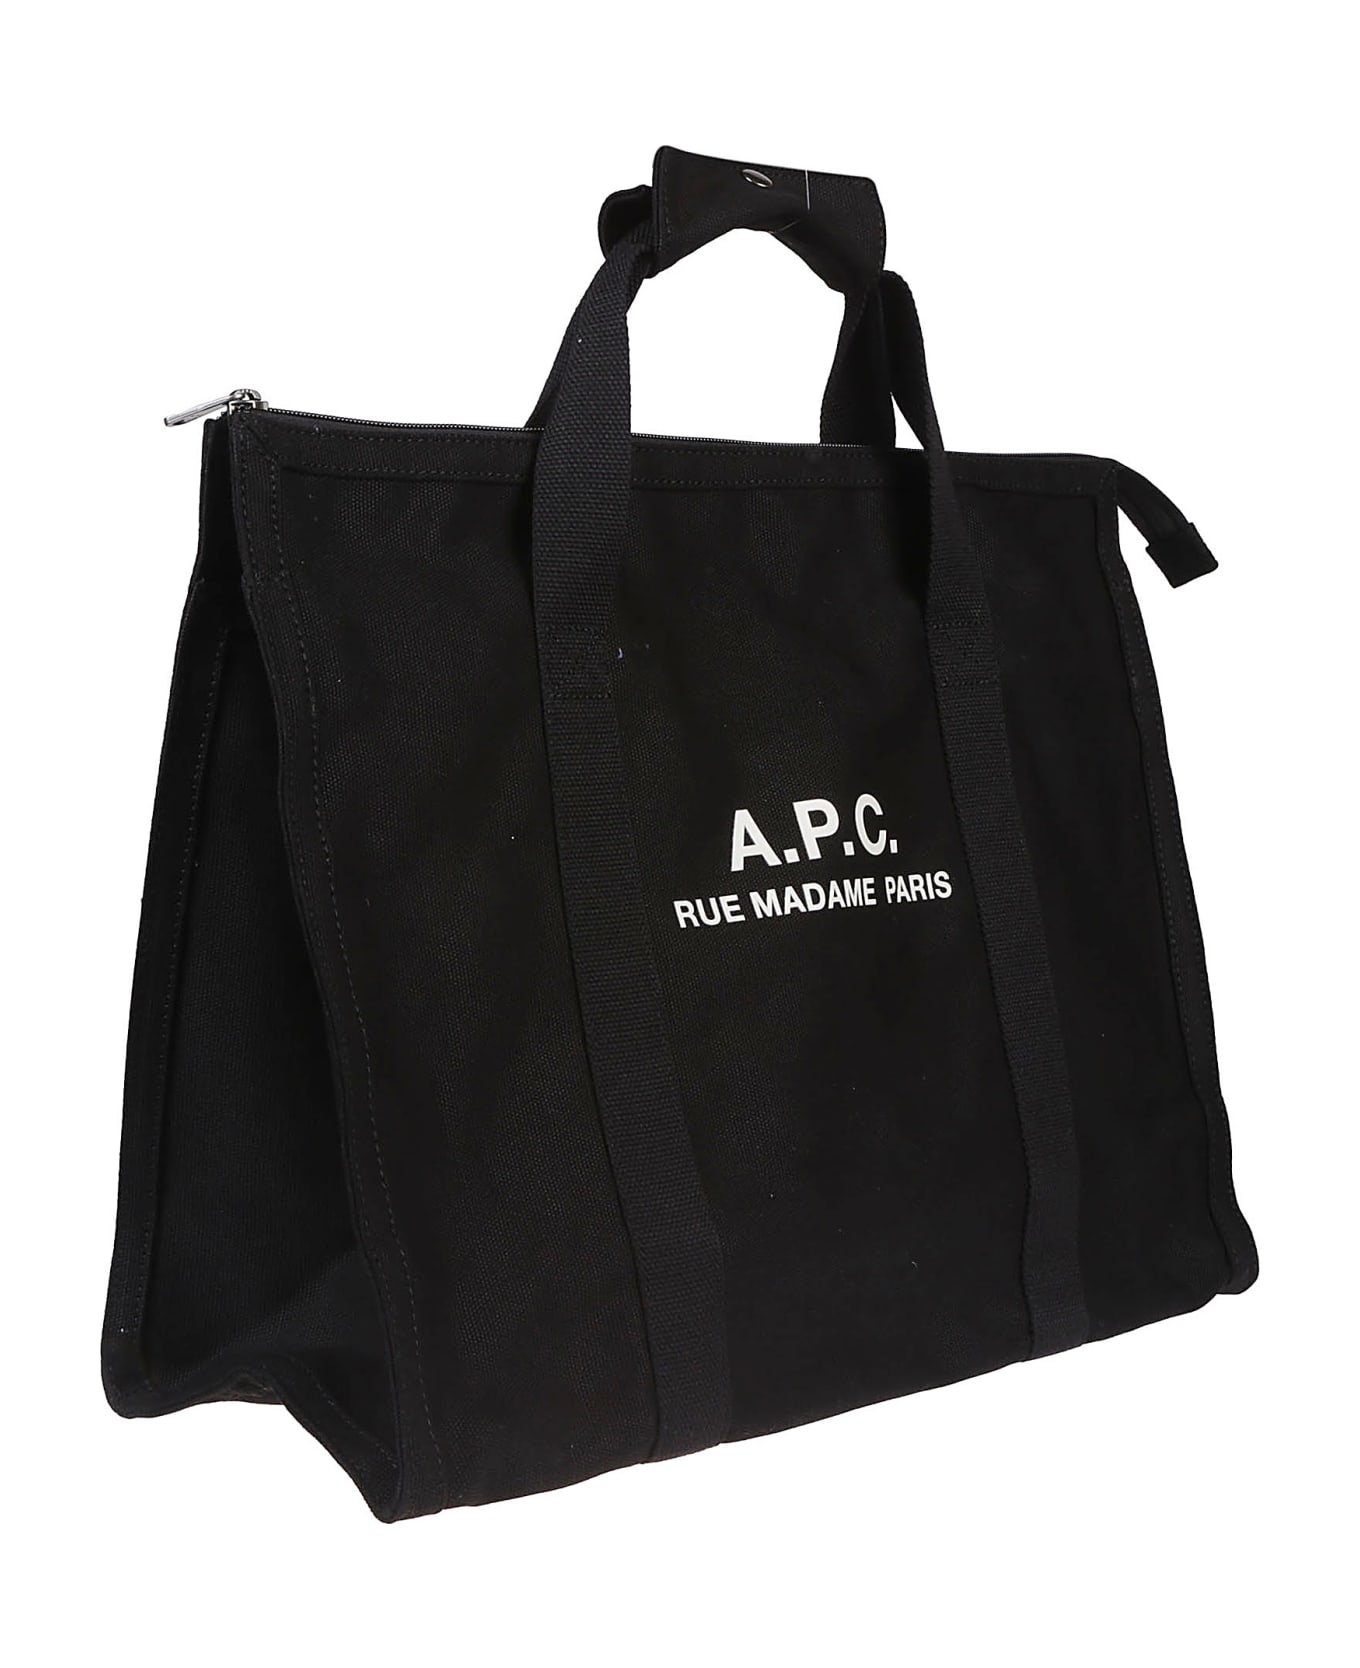 A.P.C. Recuperation Gym Bag - Lzz Noir